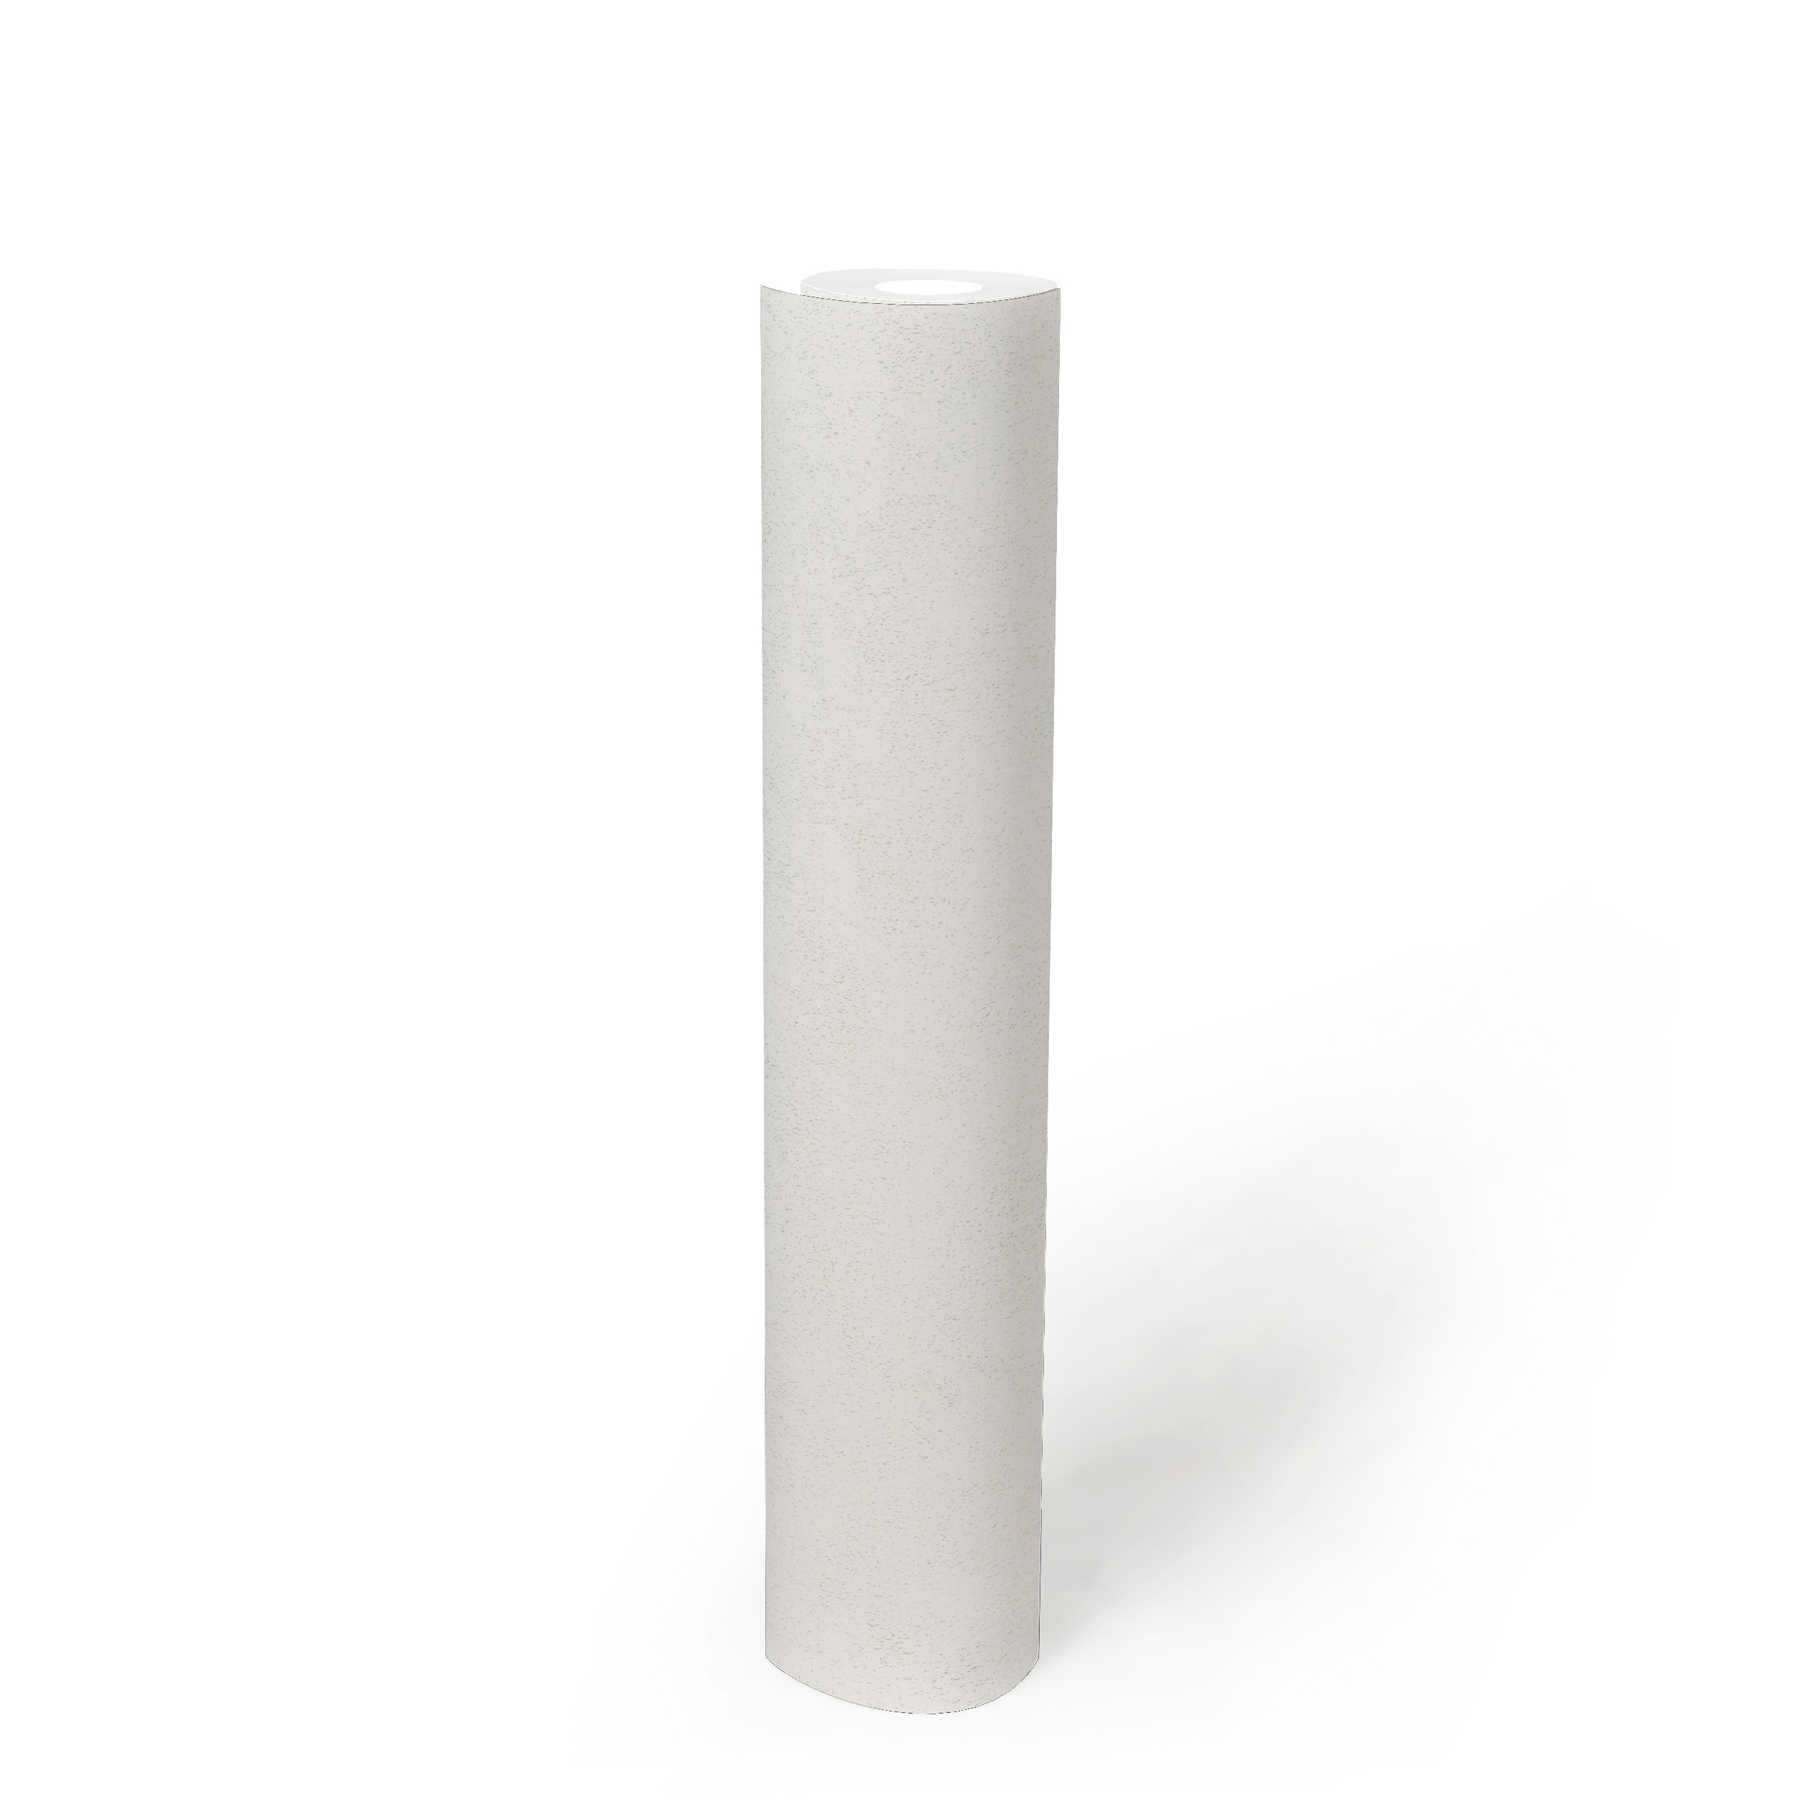             Unitapete mit fein melierter Oberflächenstruktur – Weiß
        